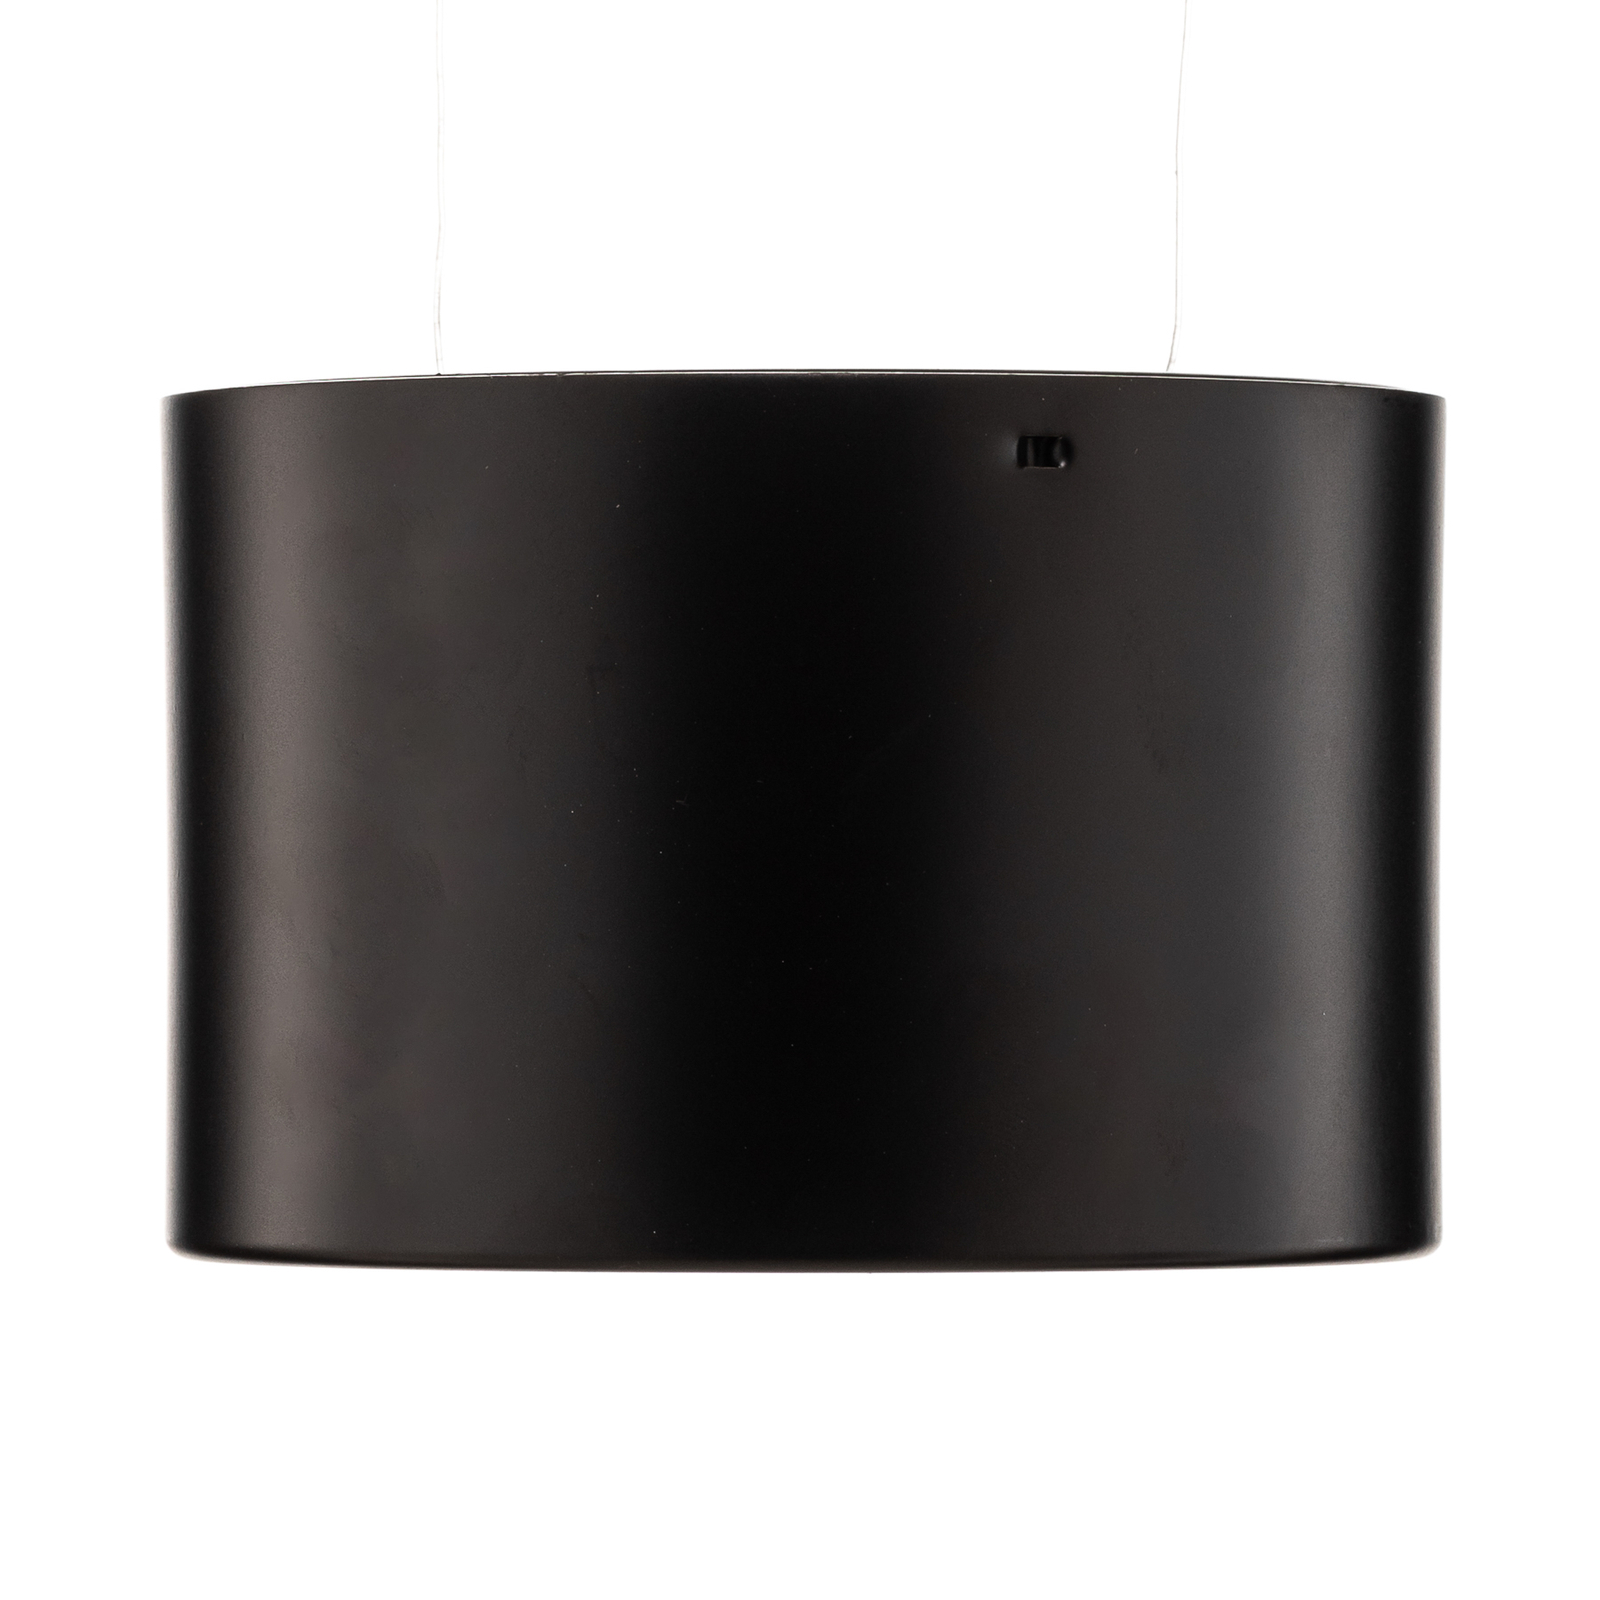 Ita LED svetilka v črni barvi z difuzorjem, Ø 10 cm